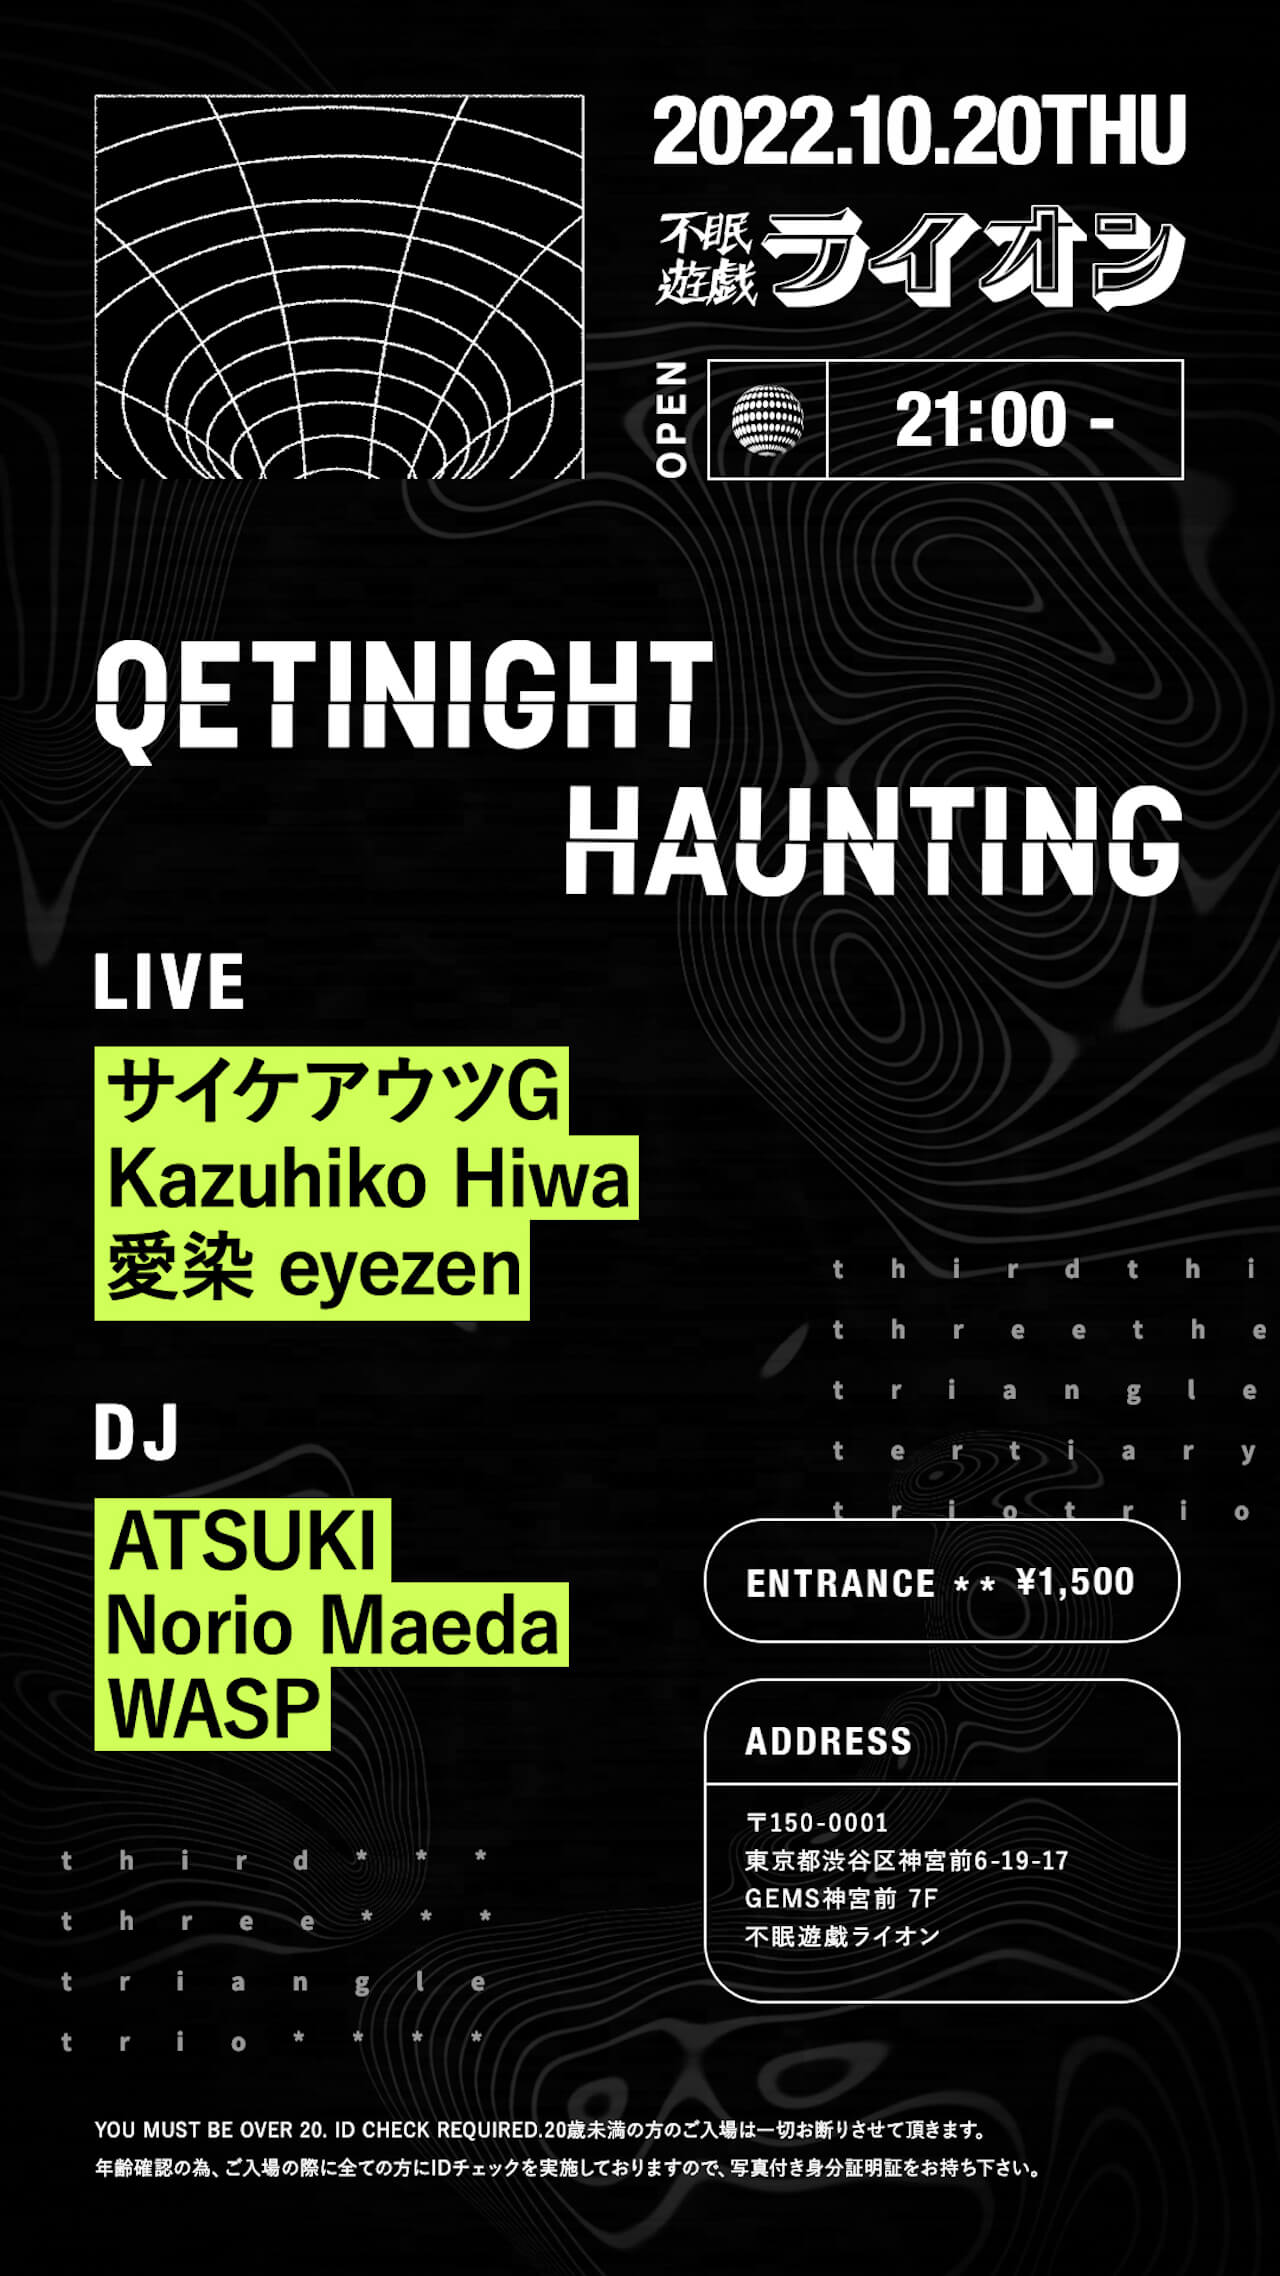 サイケアウツG、Kazuhiko Hiwa、愛染 eyezen、ATSUKI、WASPらが登場！Qetic主催イベント「QETINIGHT -HAUNTING-」開催のお知らせ music221019-qetinight-haunting-2